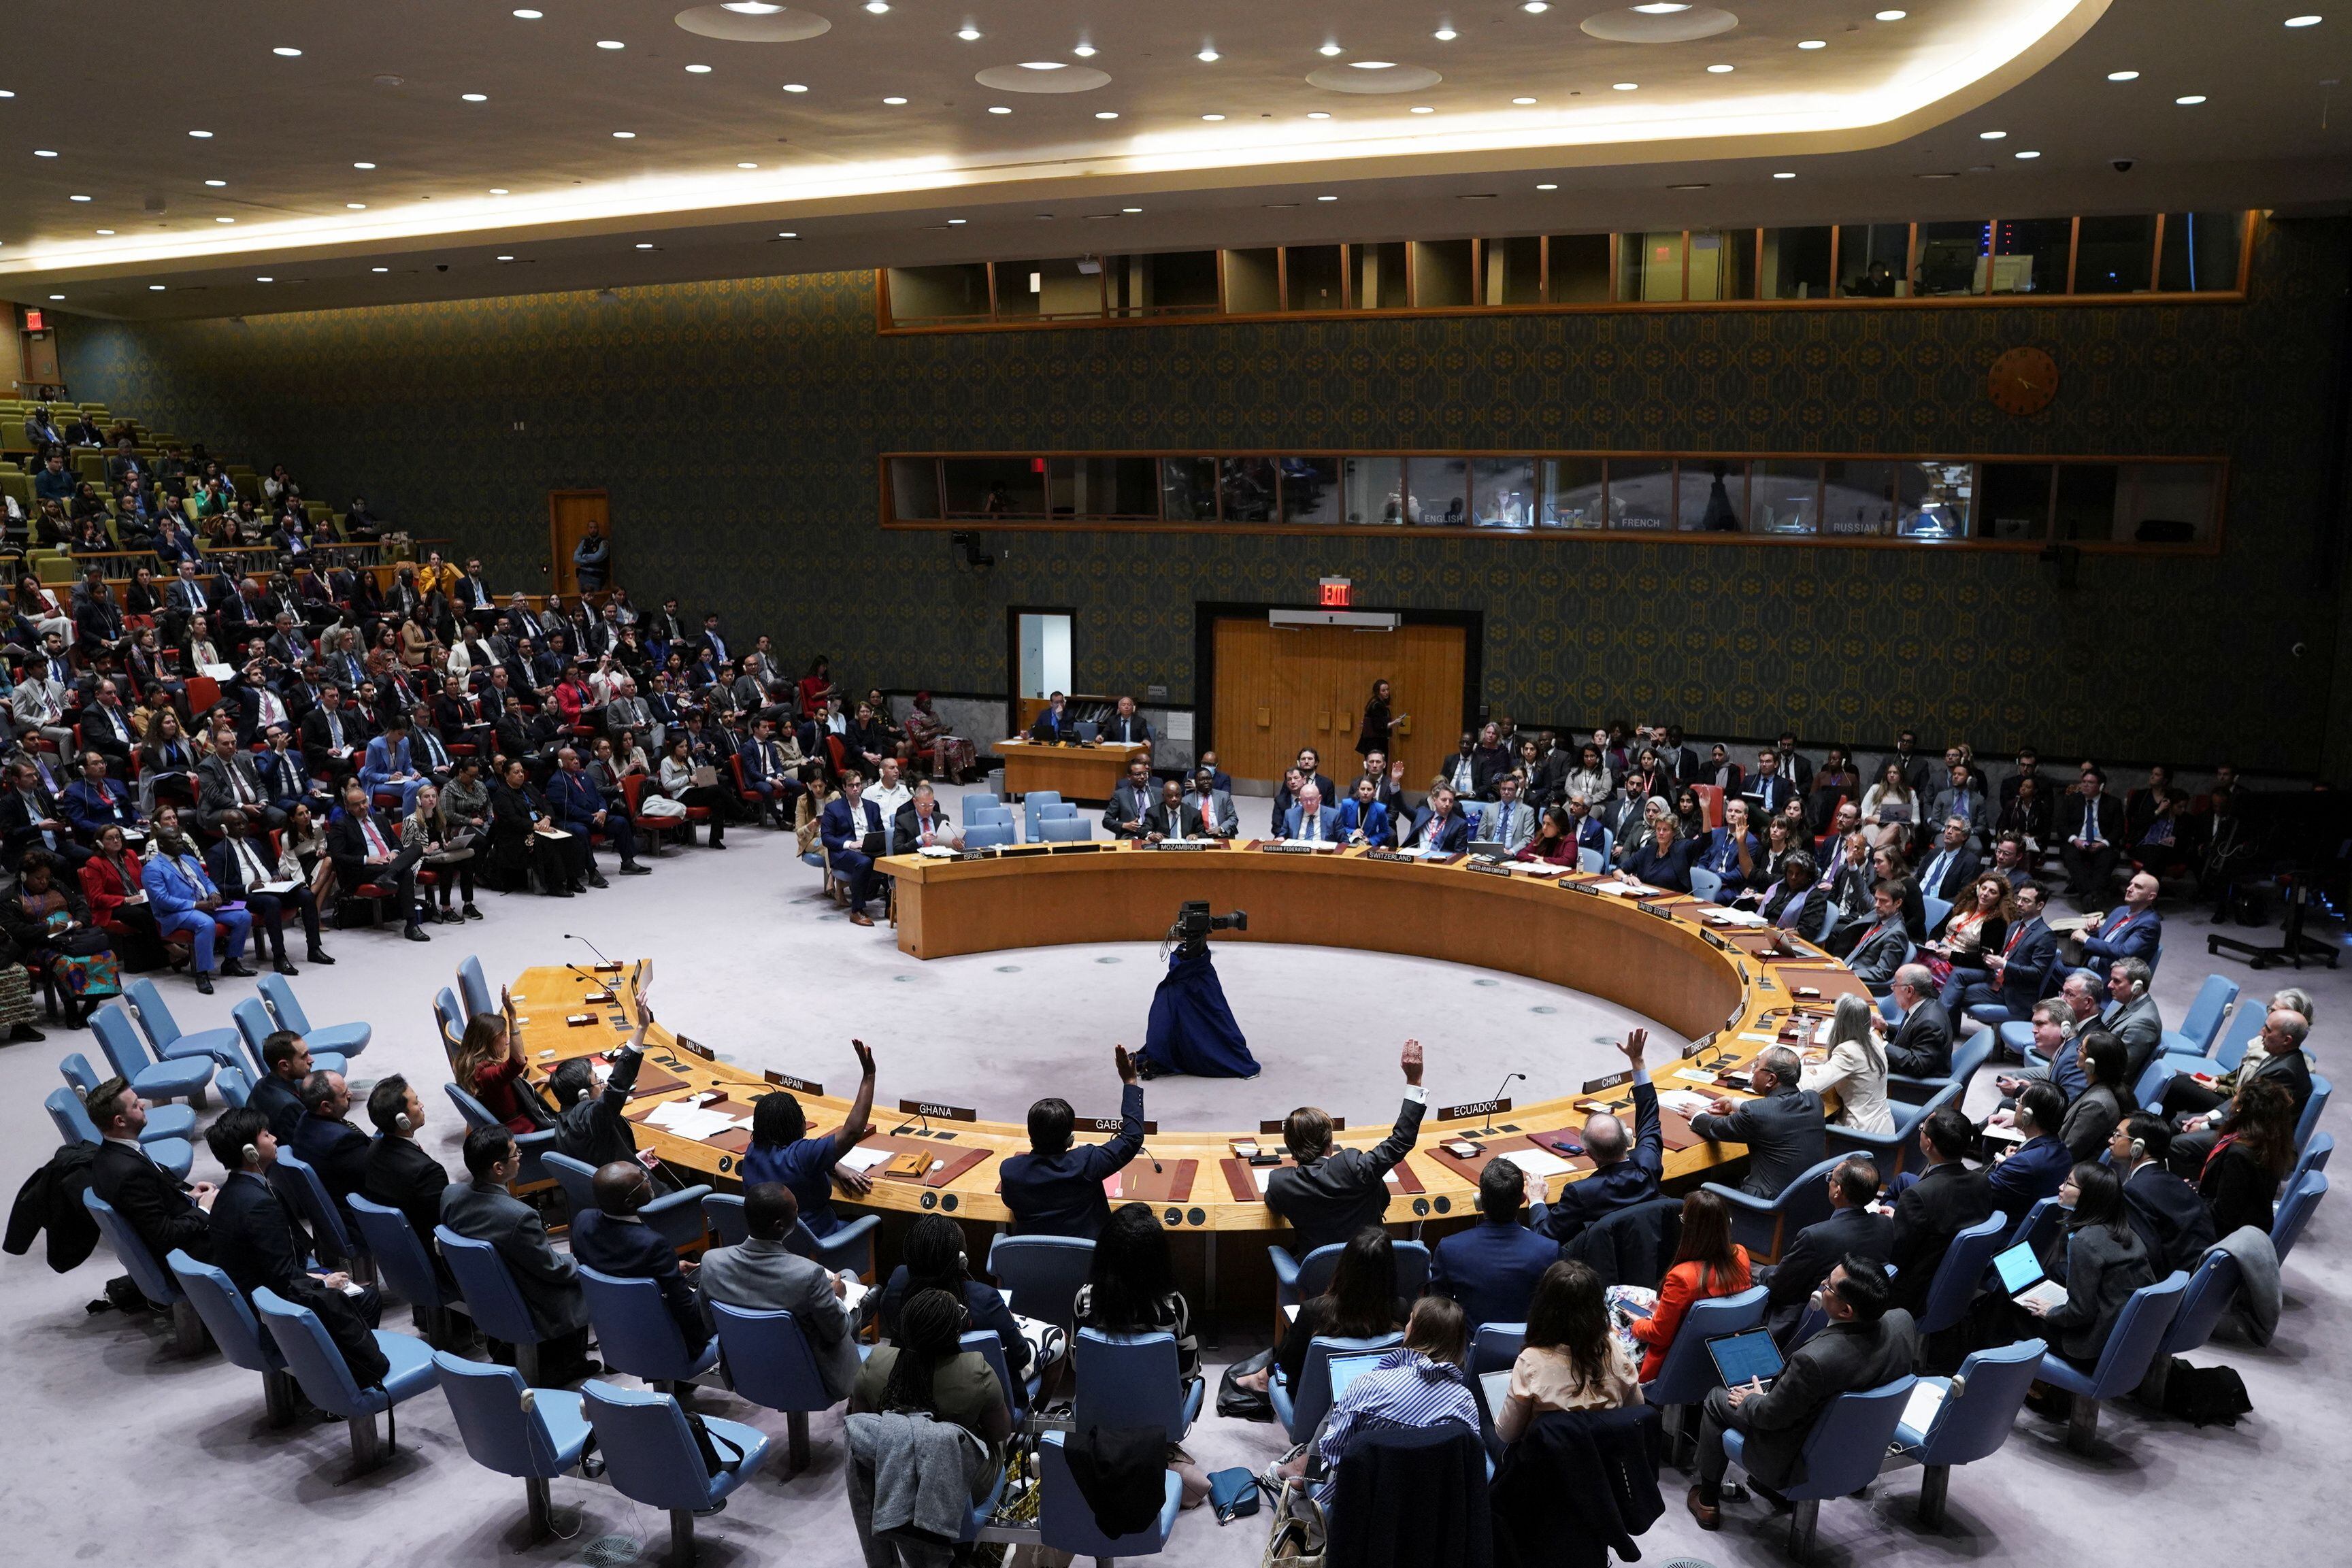 유엔 안전보장이사회는 15일(현지 시각) 회의를 열고 이스라엘-팔레스타인 문제와 관련한 결의안을 채택했다고 밝혔다.
/연합뉴스